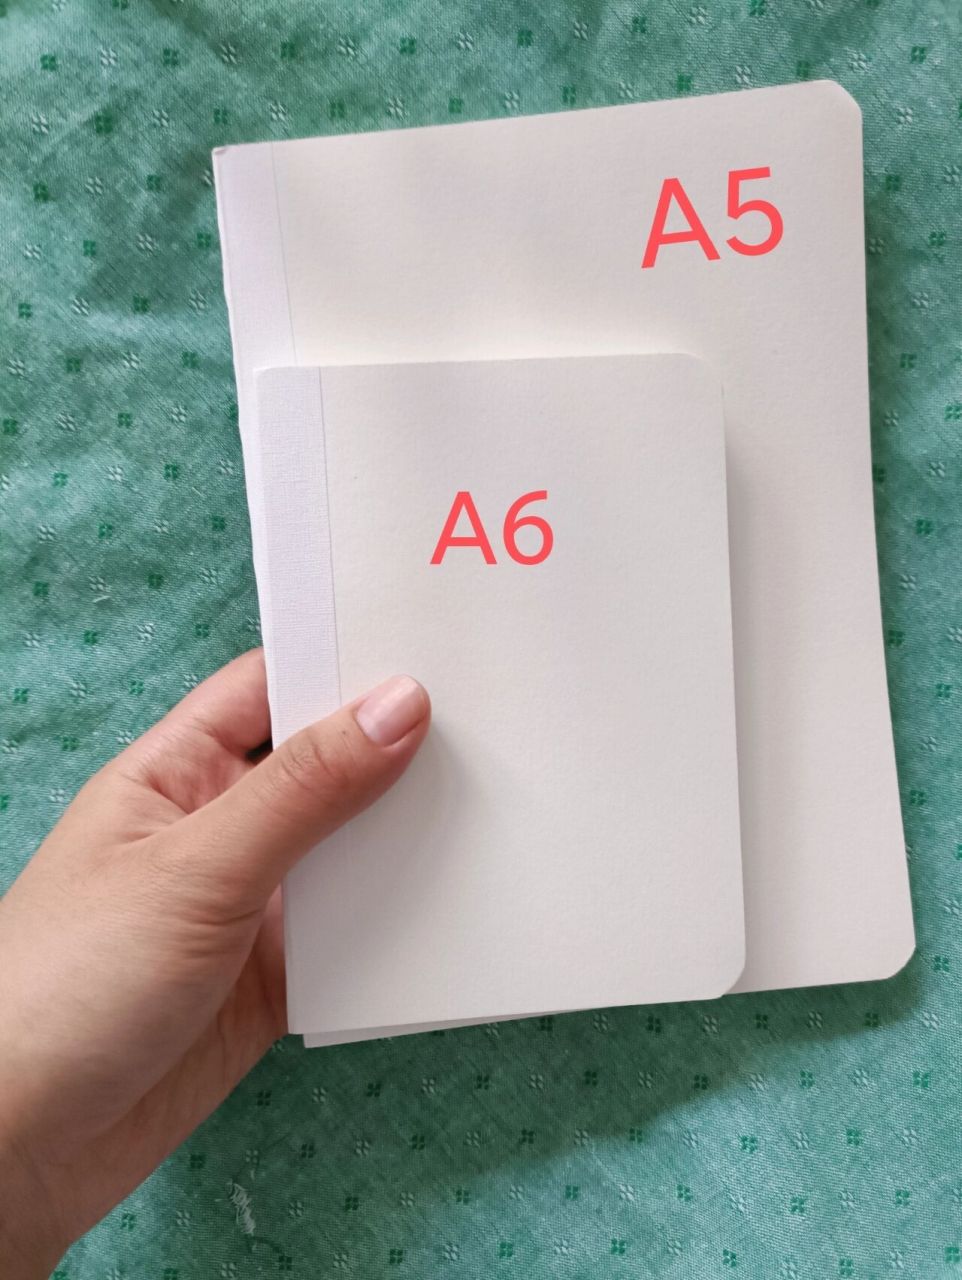 a5a6纸尺寸对比图片